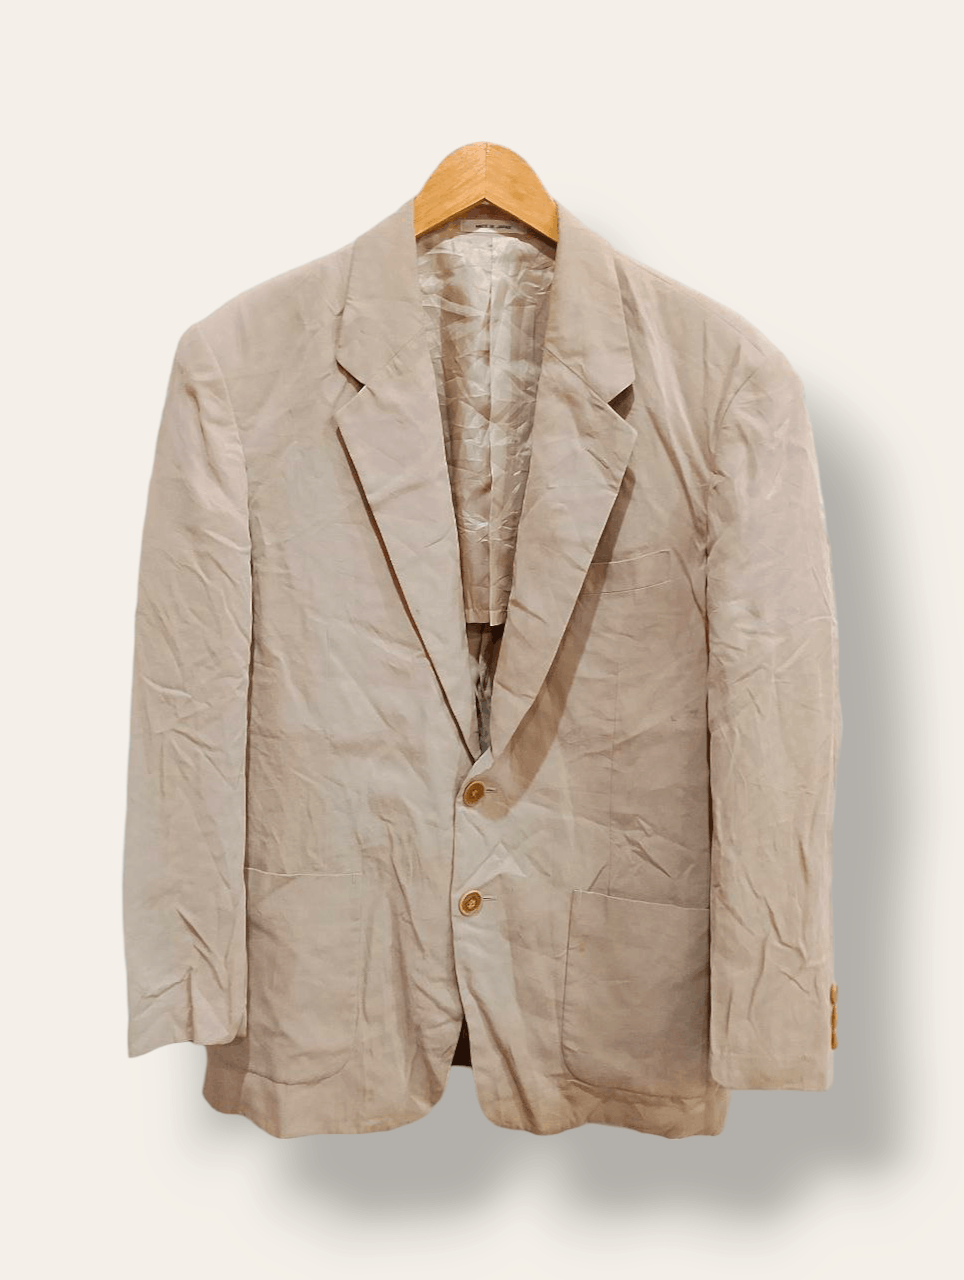 Archival Clothing - INTERMEZZO TENCEL™ Single Breasted Japan Made Blazer Jacket - 1